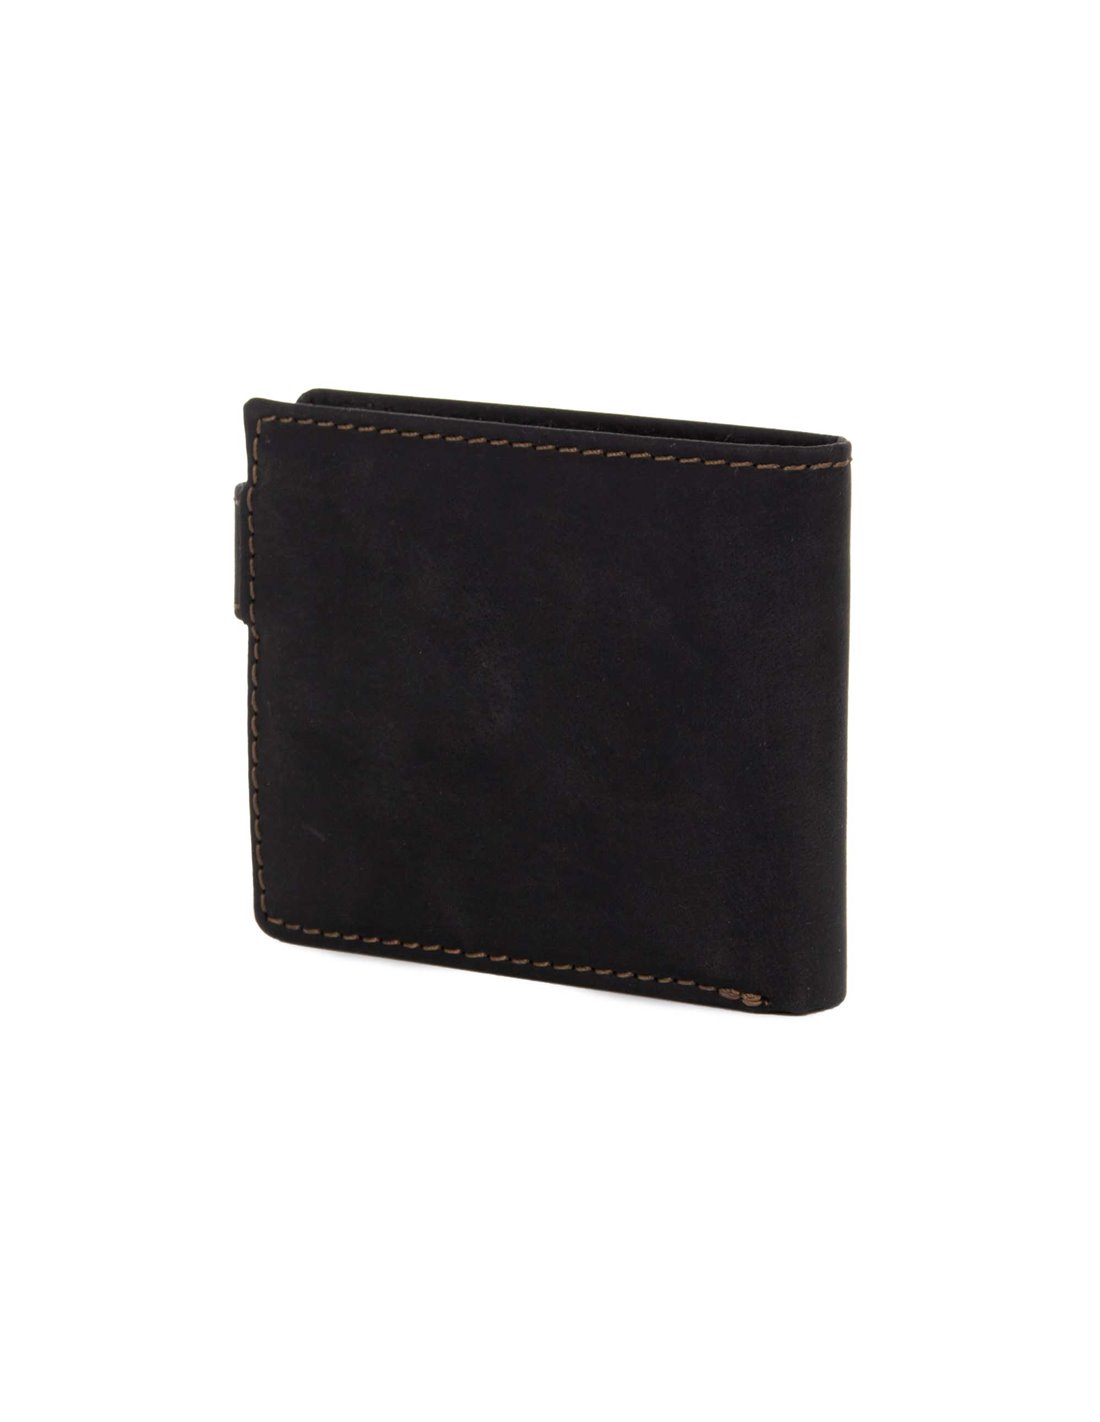 DAKAR - K 1053 AD black wallet